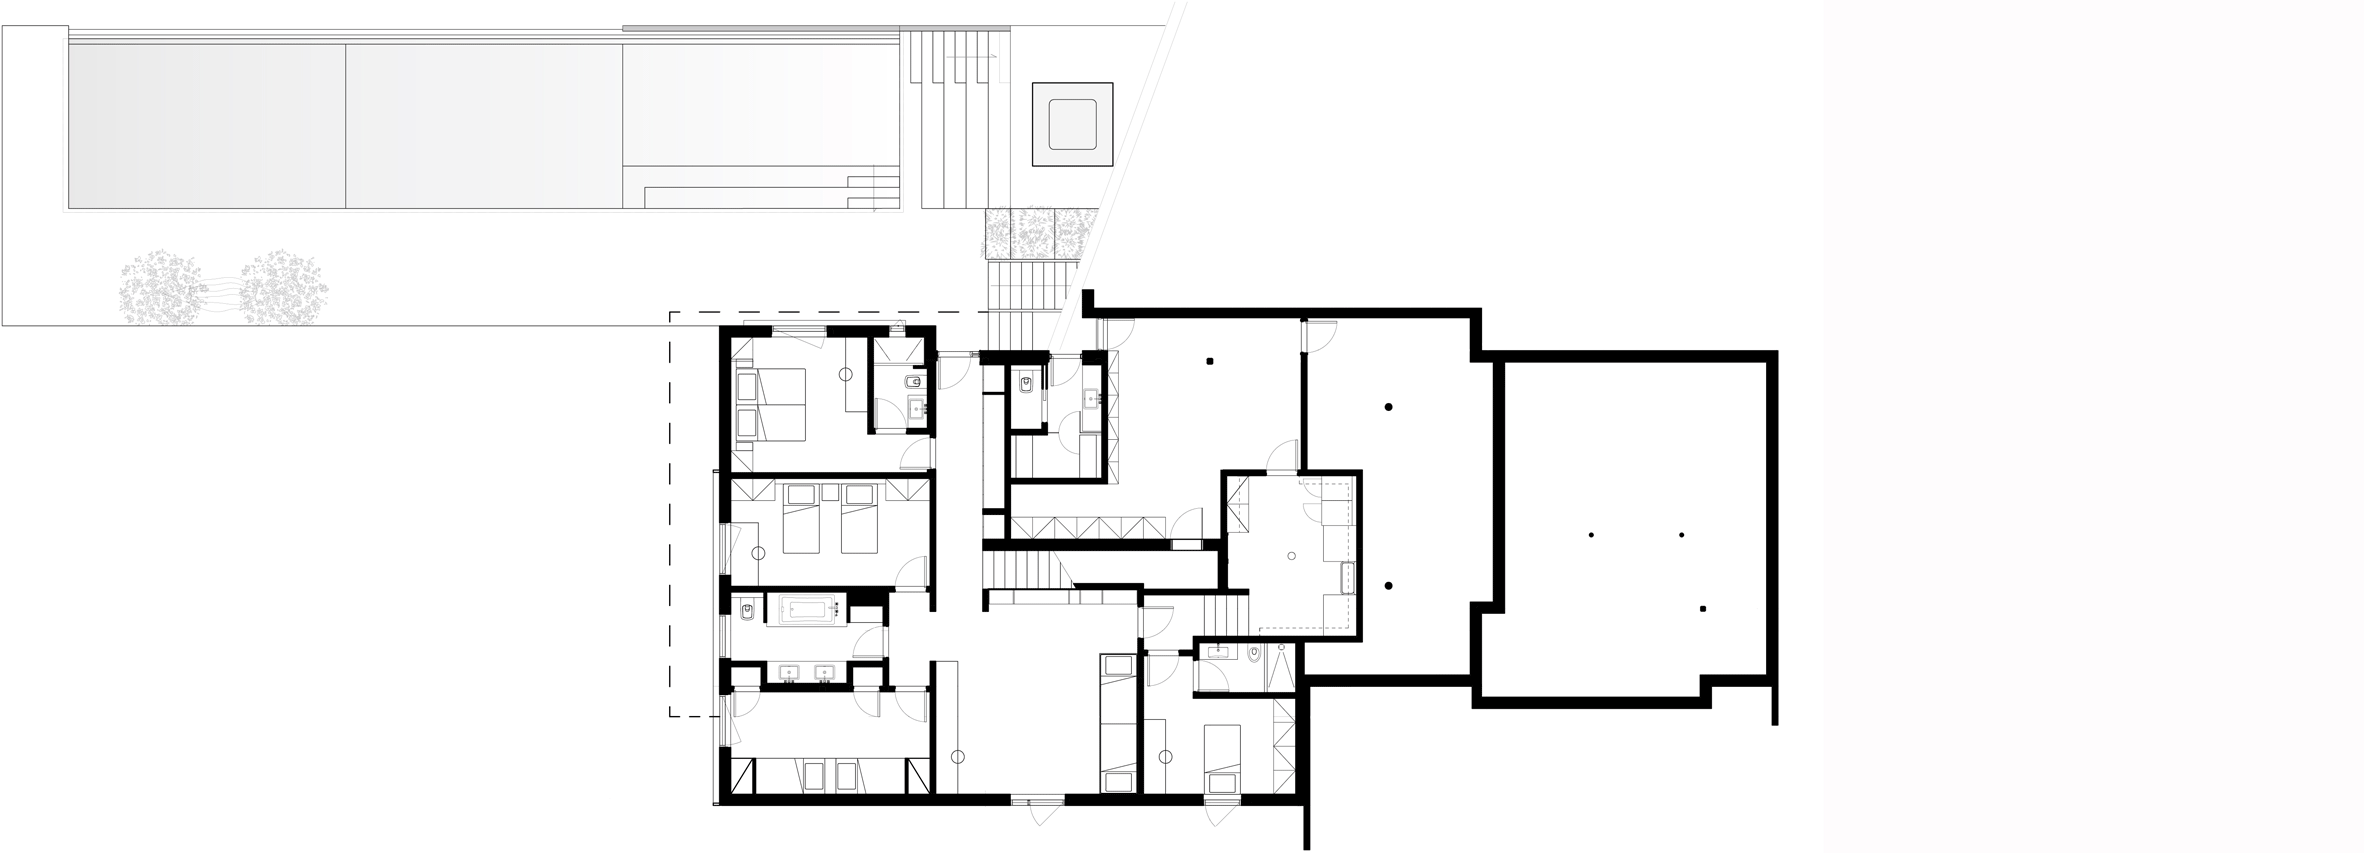 peconic-house-mapos-studio-hamptons-long-island-new-york_dezeen_basement-floor-plan.gif